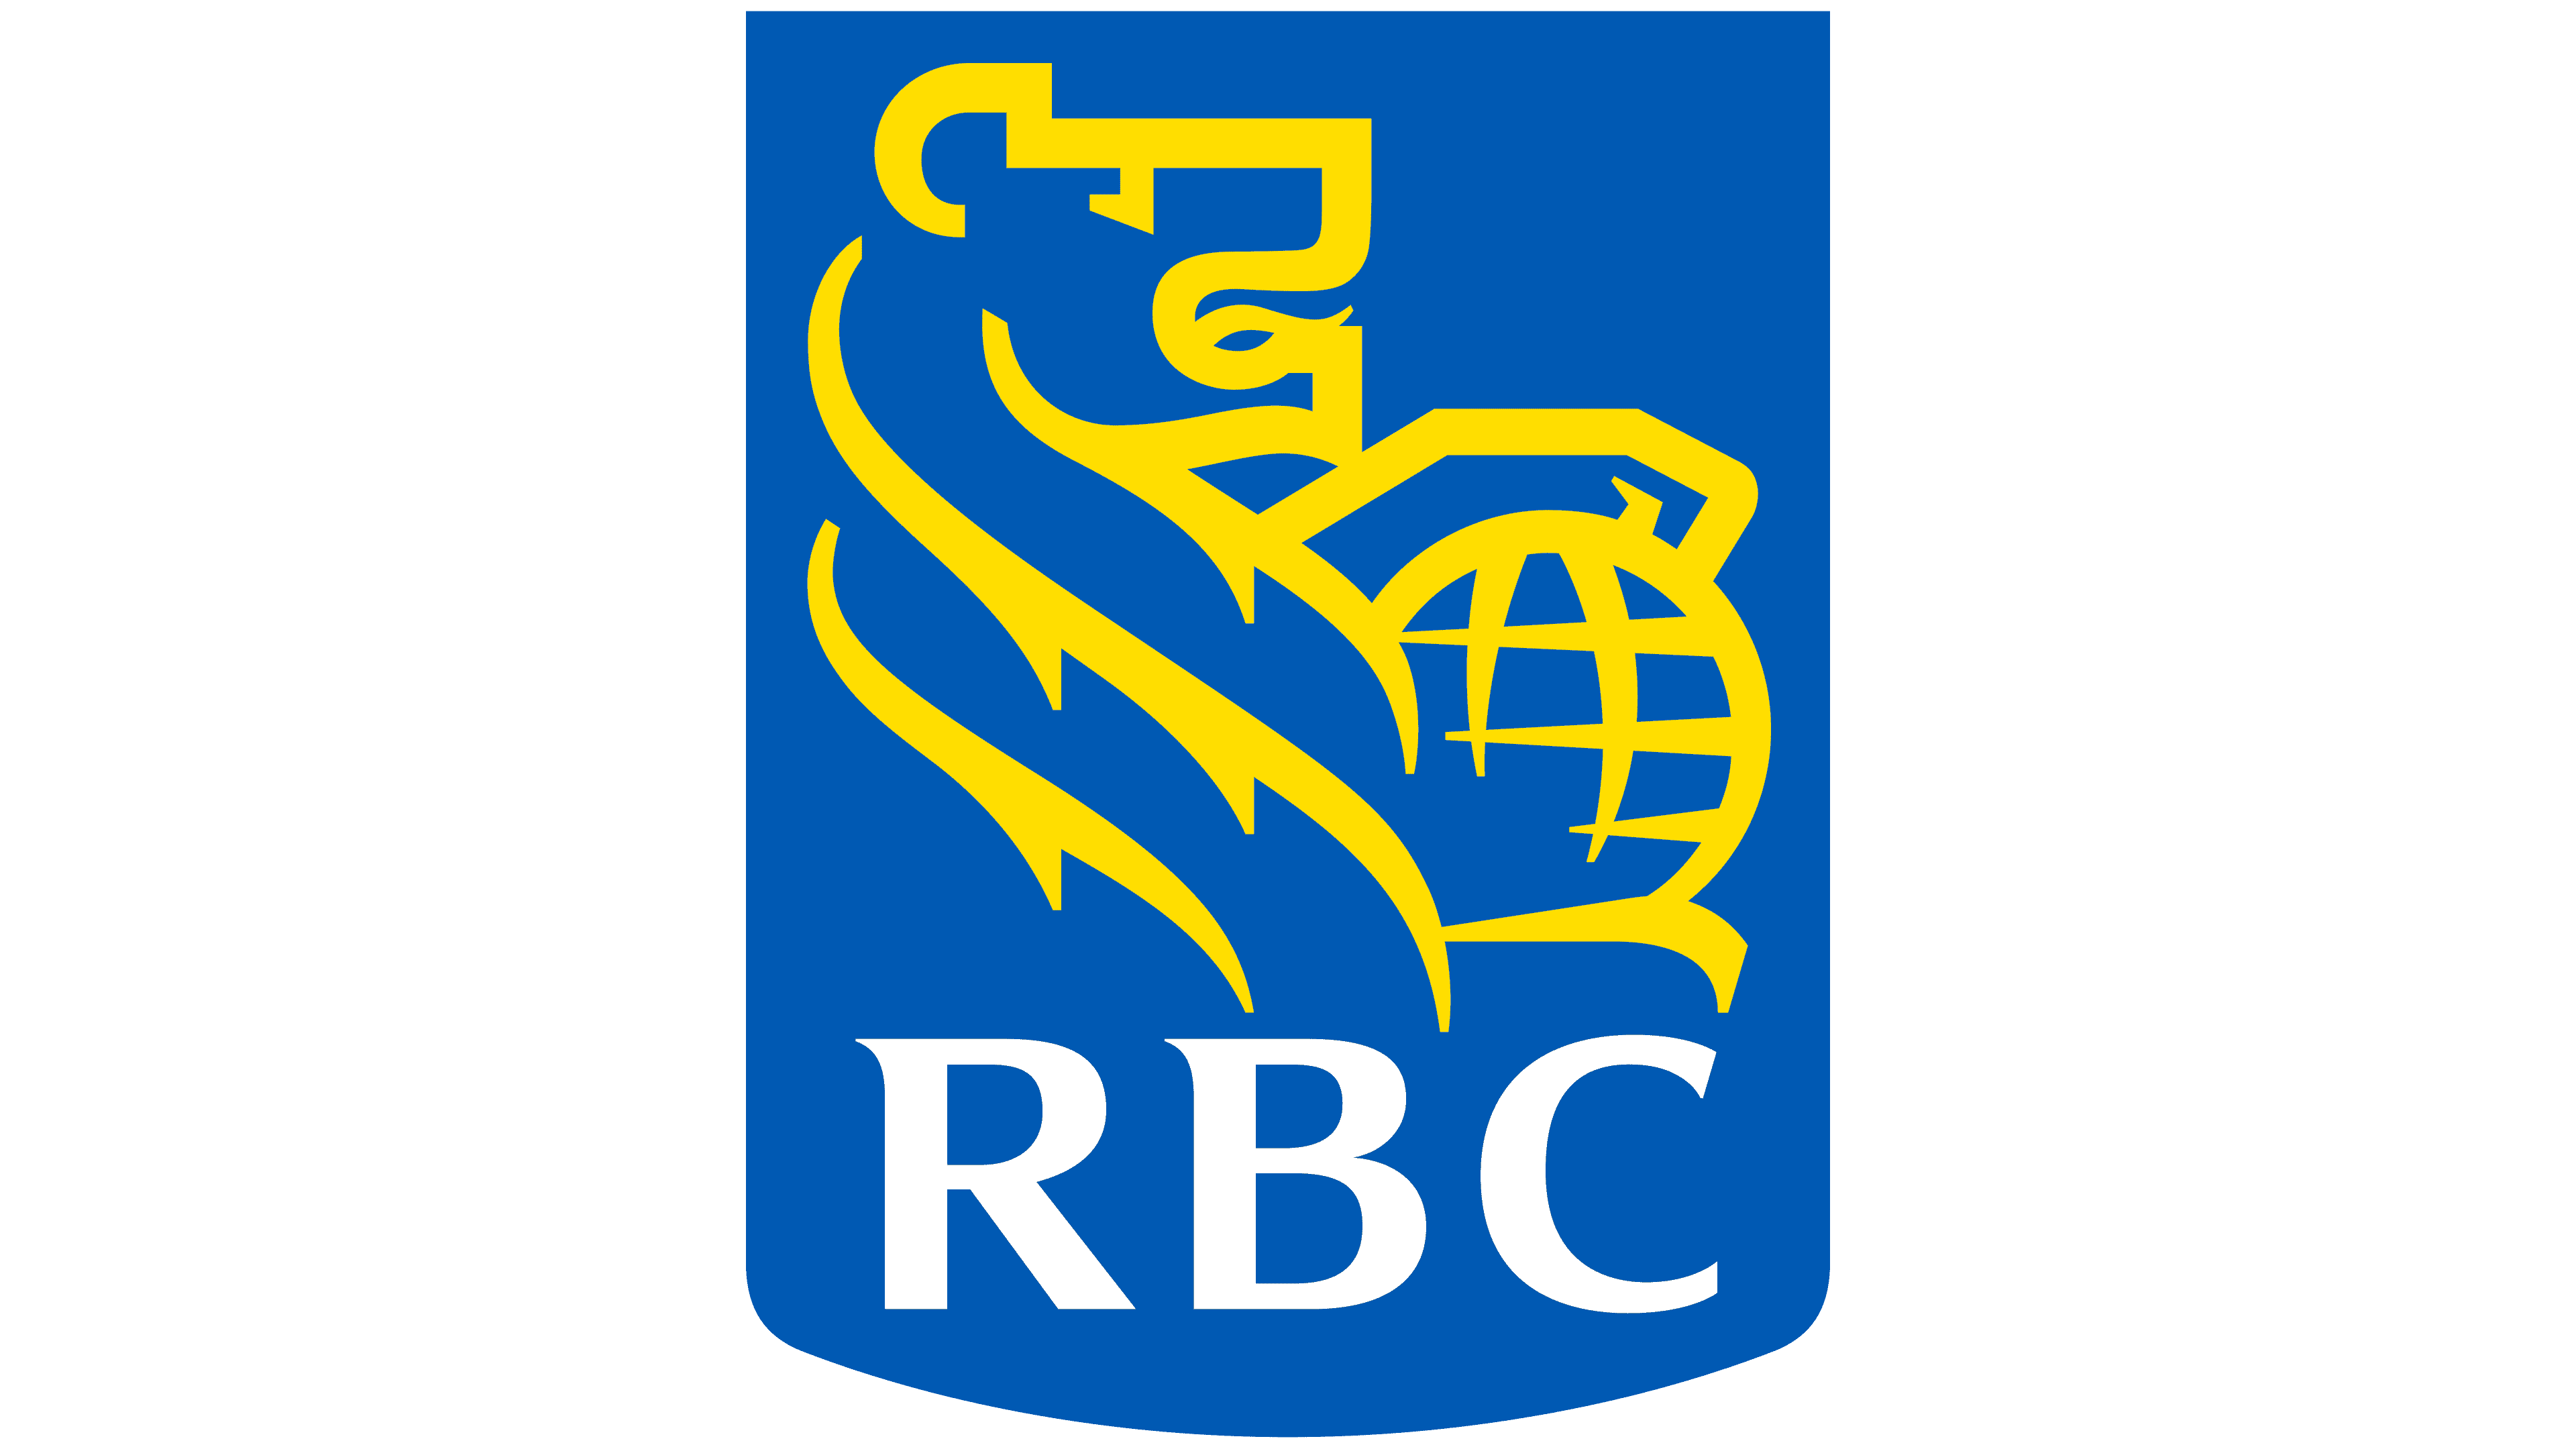 Royal-Bank-of-Canada-Logo